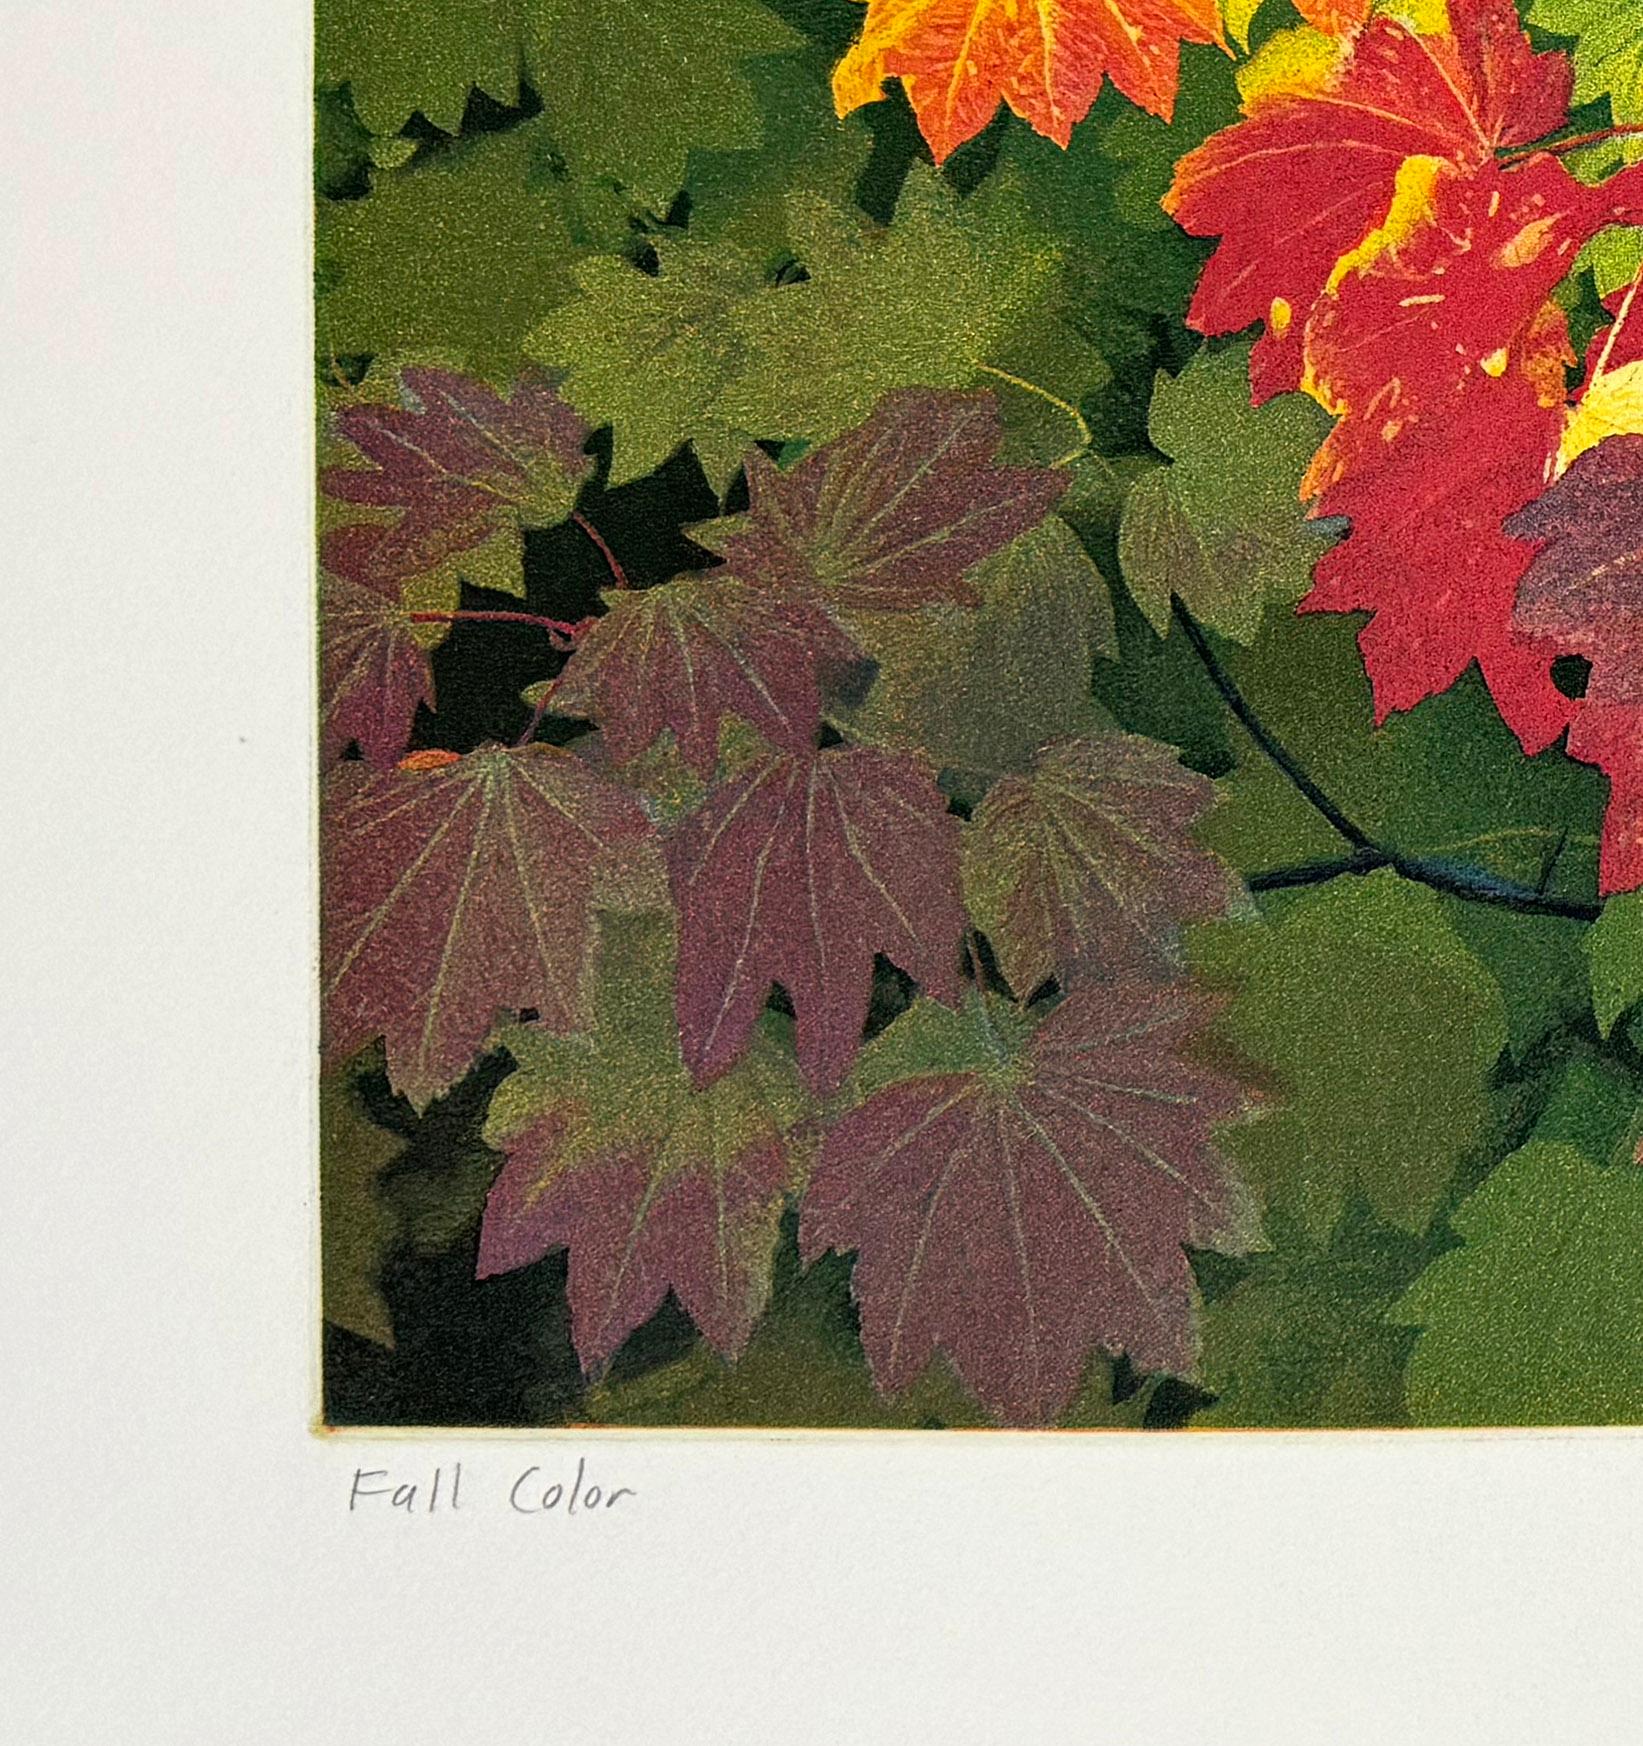 Couleurs d'automne - Contemporain Print par Stephen McMillan